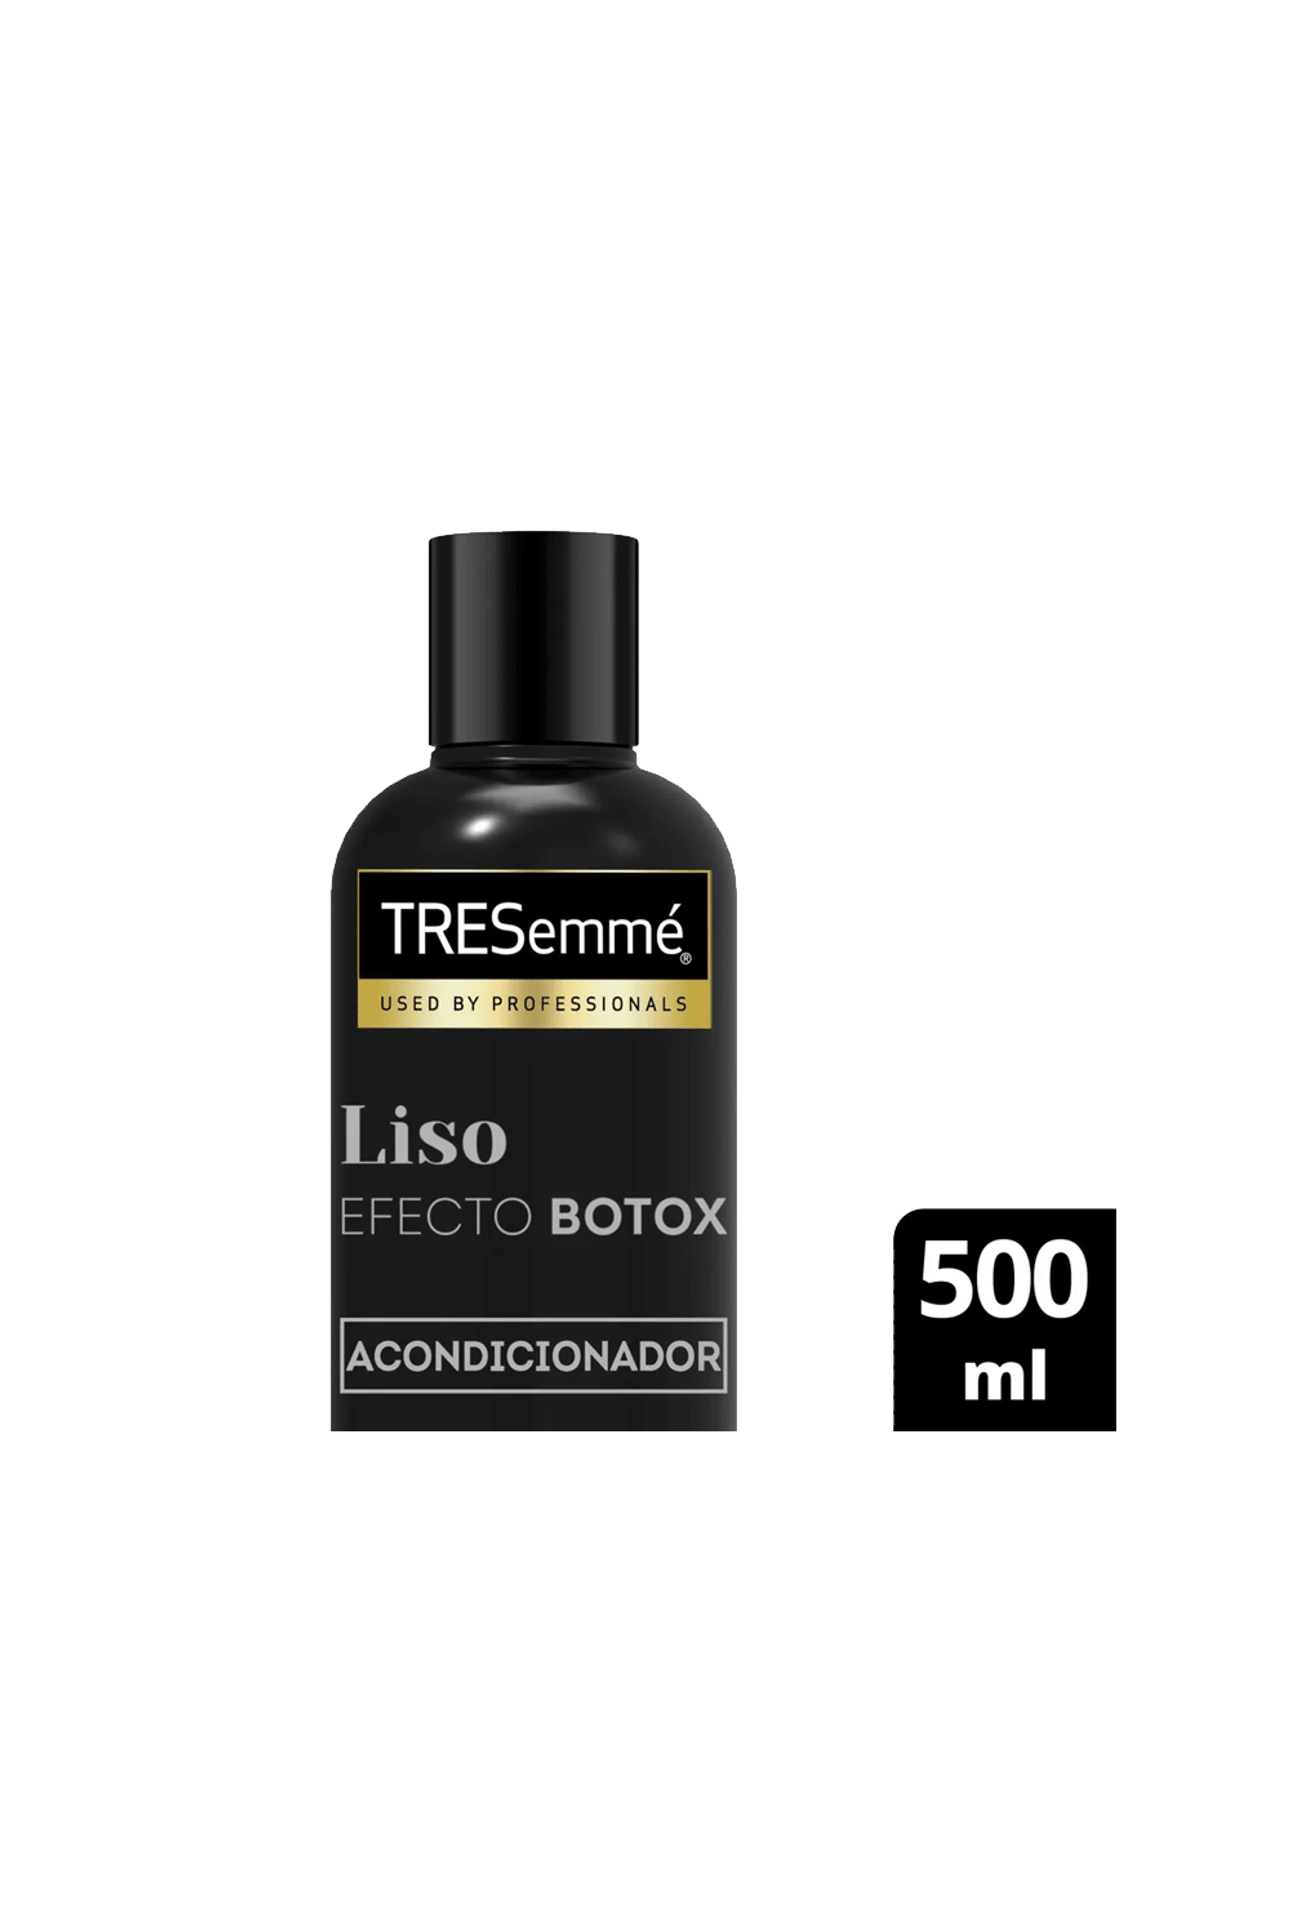 Acondicionador-Tresemme-Liso-Efecto-Botox-x-500-ml-Tresemme